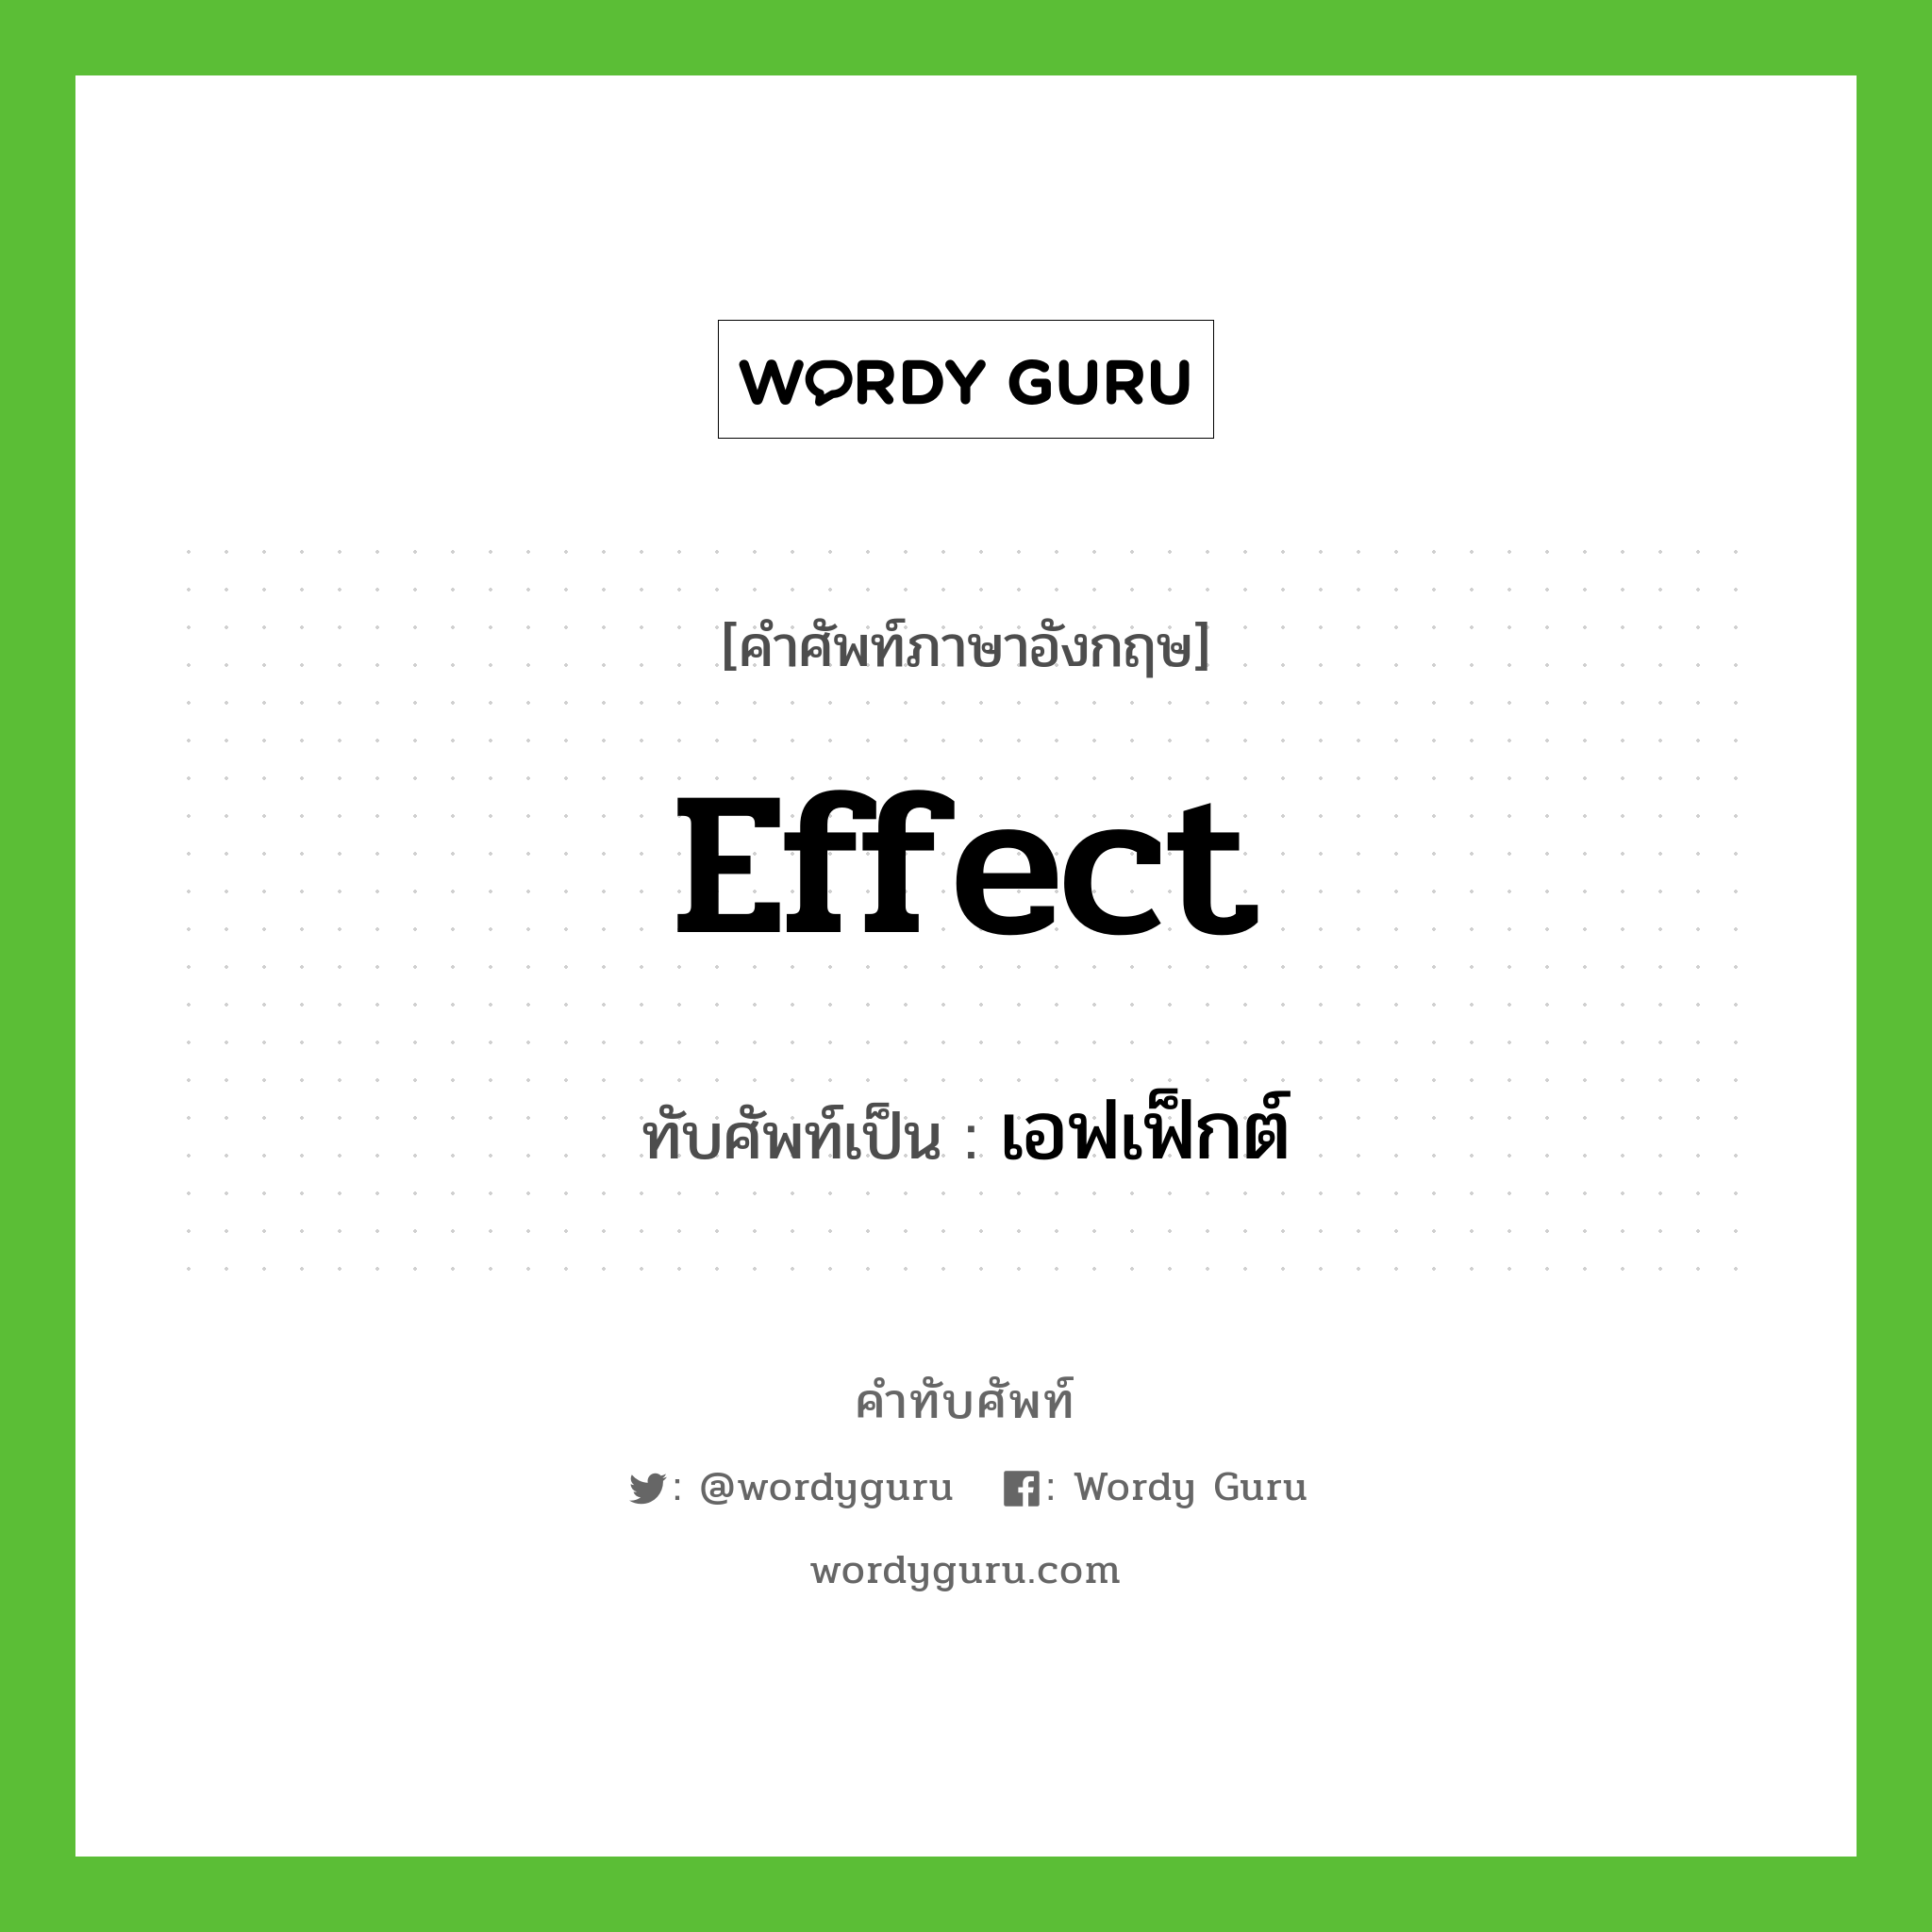 effect เขียนเป็นคำไทยว่าอะไร?, คำศัพท์ภาษาอังกฤษ effect ทับศัพท์เป็น เอฟเฟ็กต์